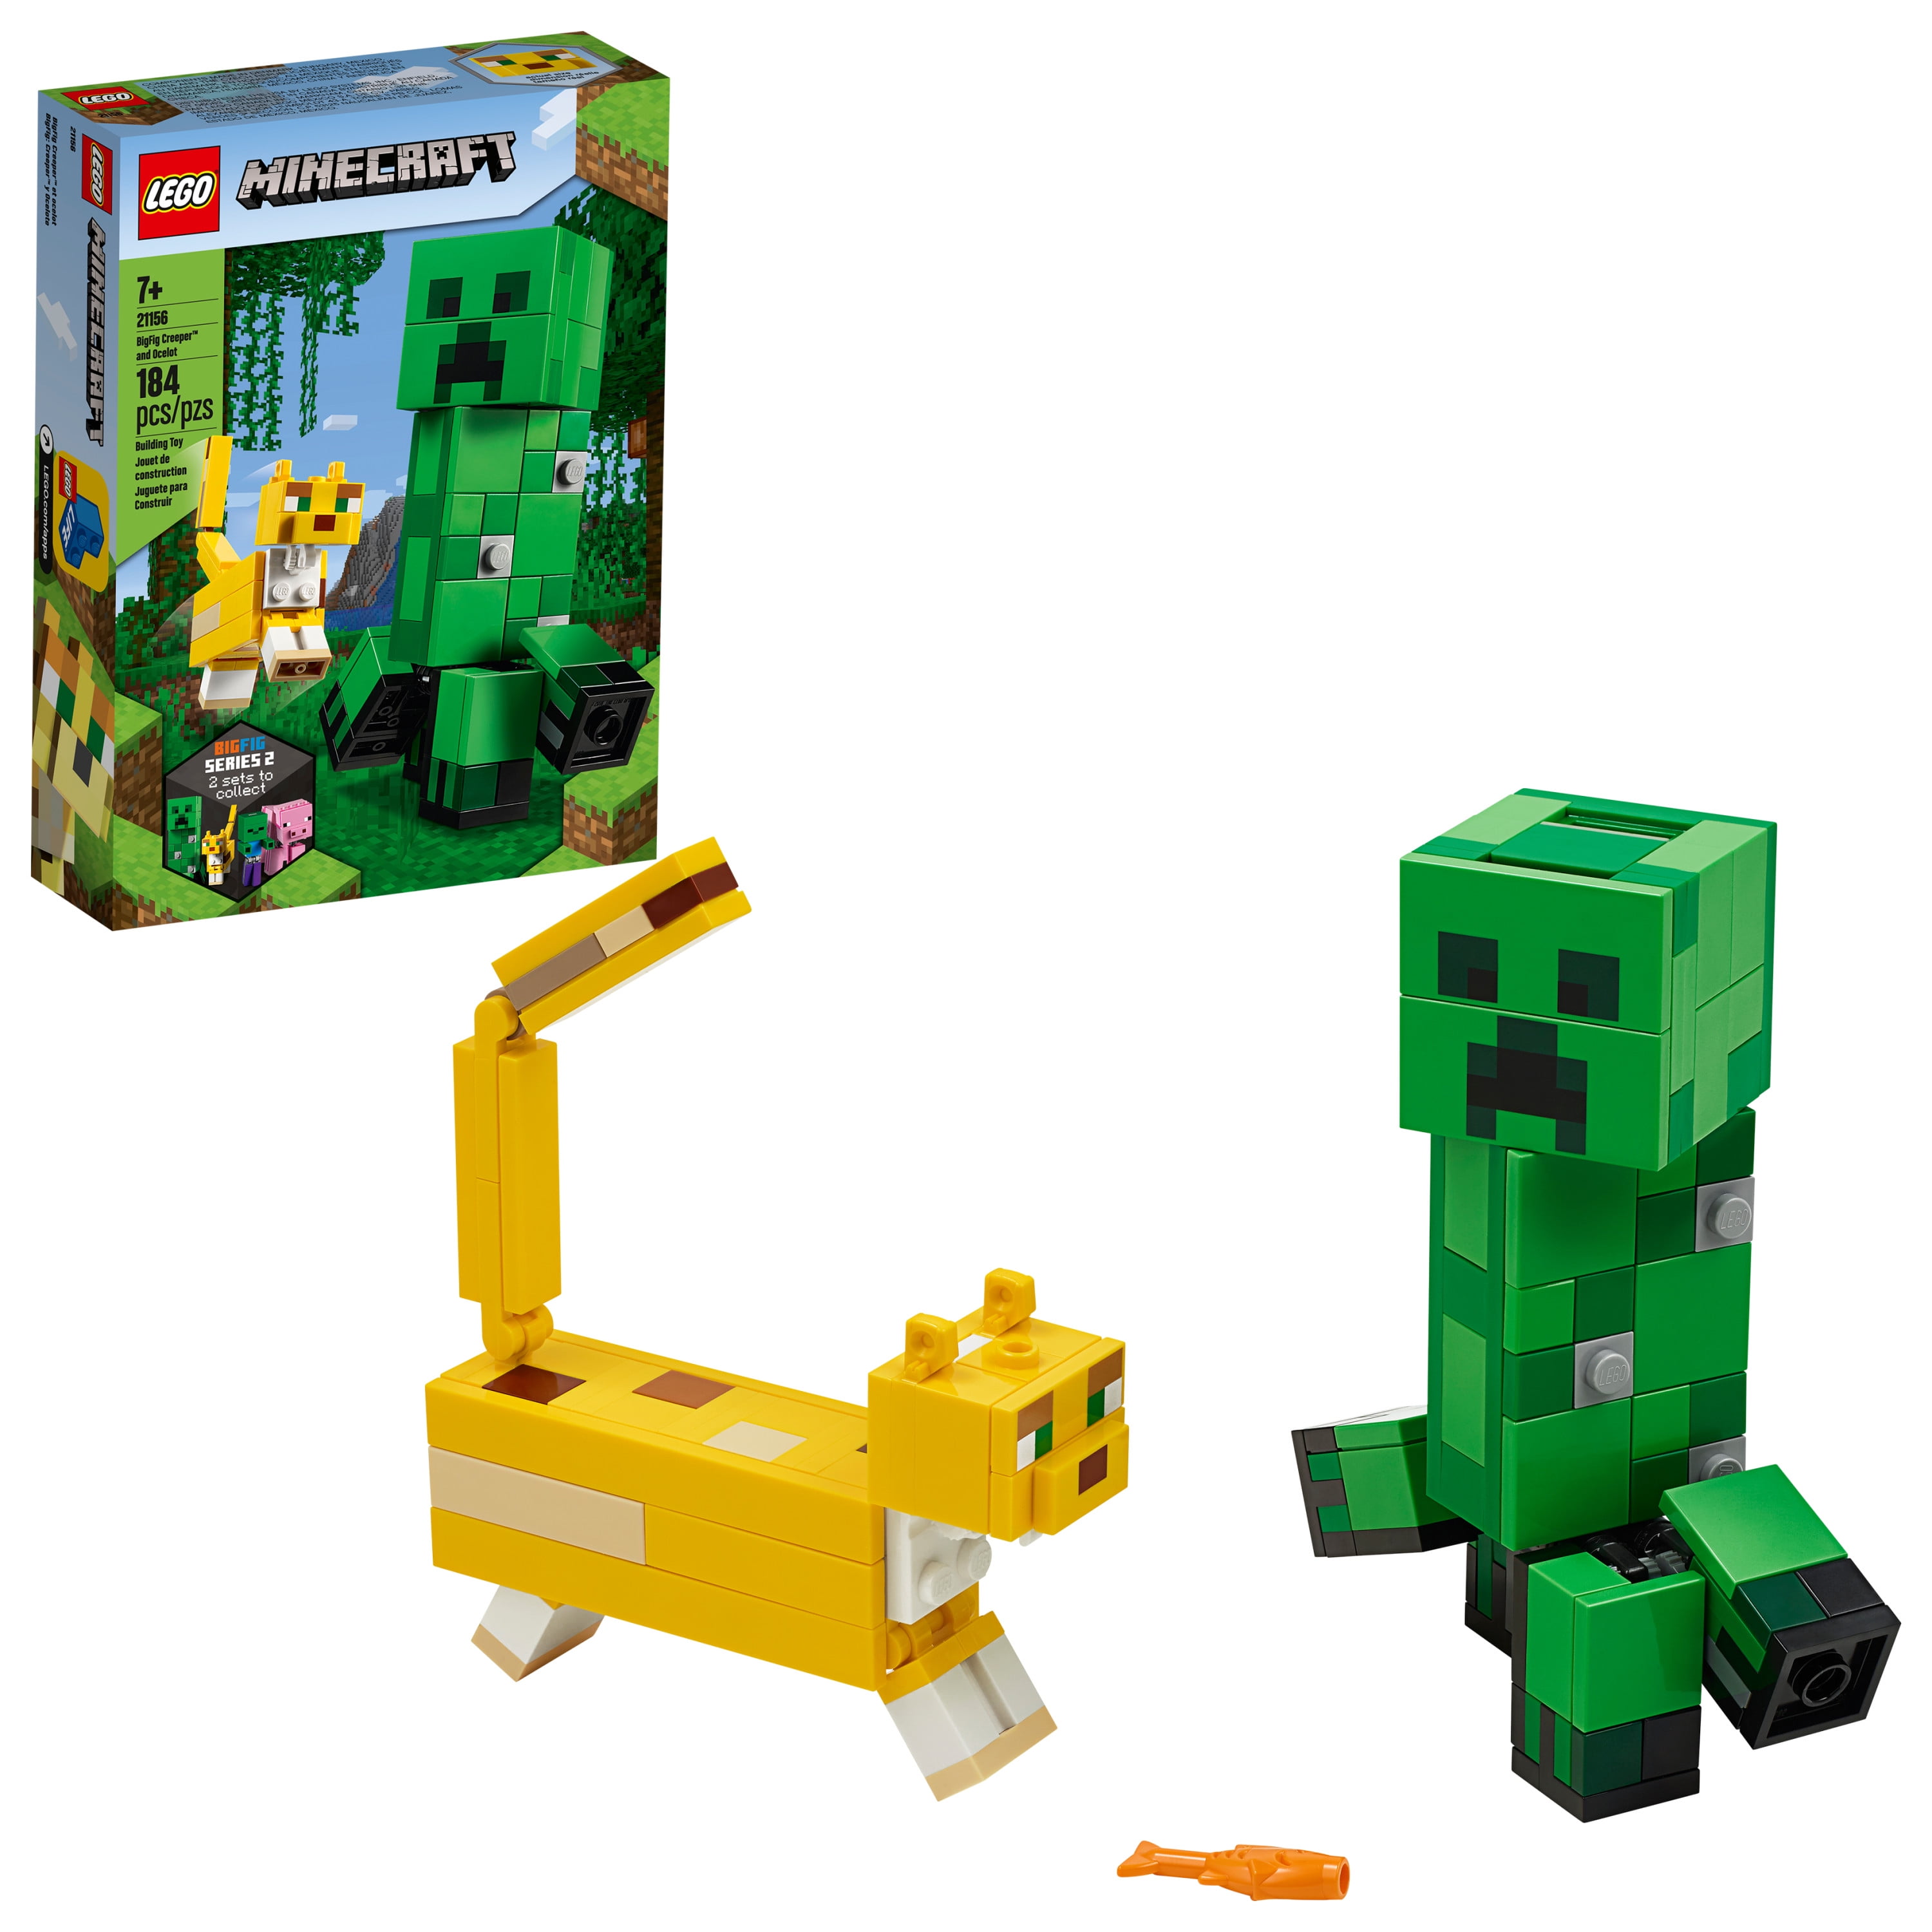 LEGO Minecraft 21155 21153 Die Creeper™ Mine Die Schaffarm Steve  N8/19 